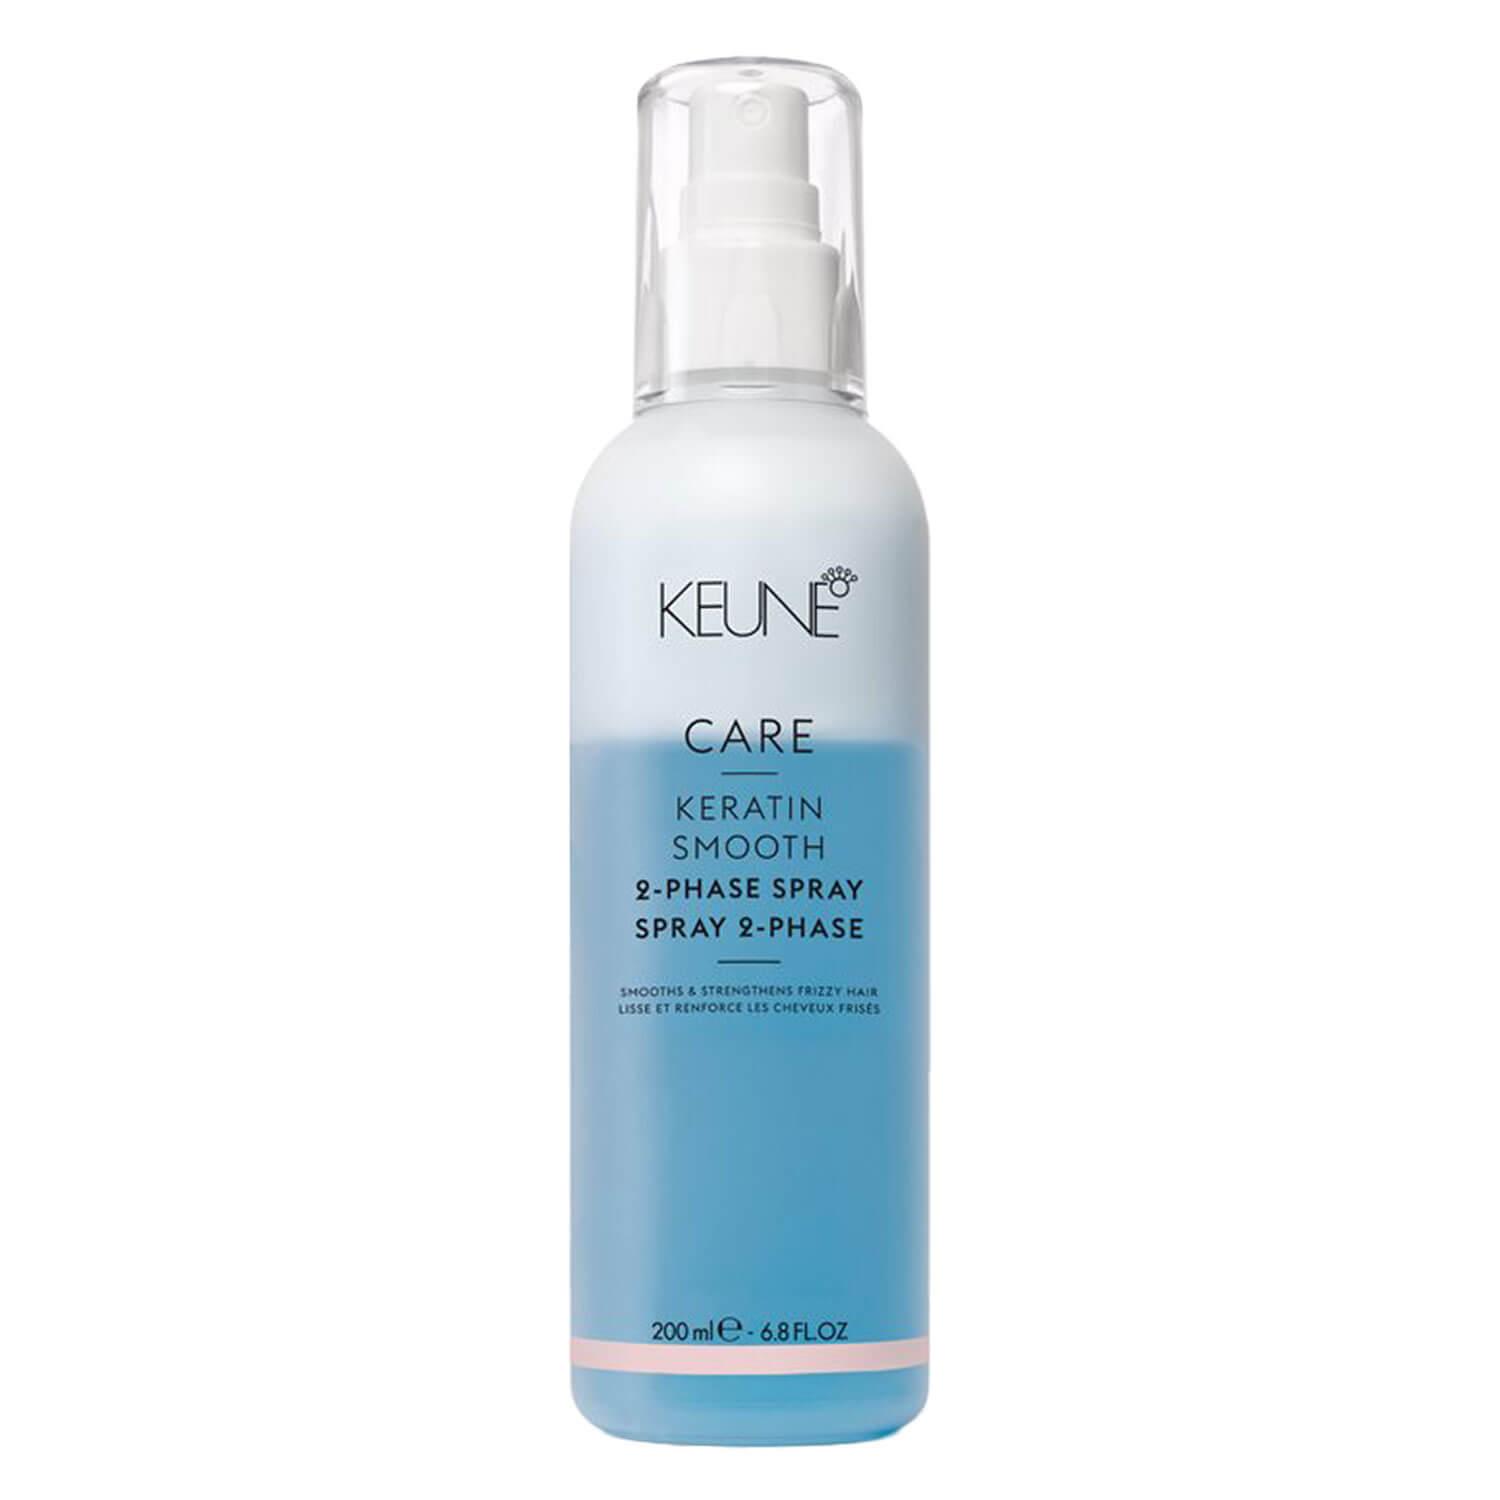 Keune Care - Keratin Smooth 2-Phase Spray